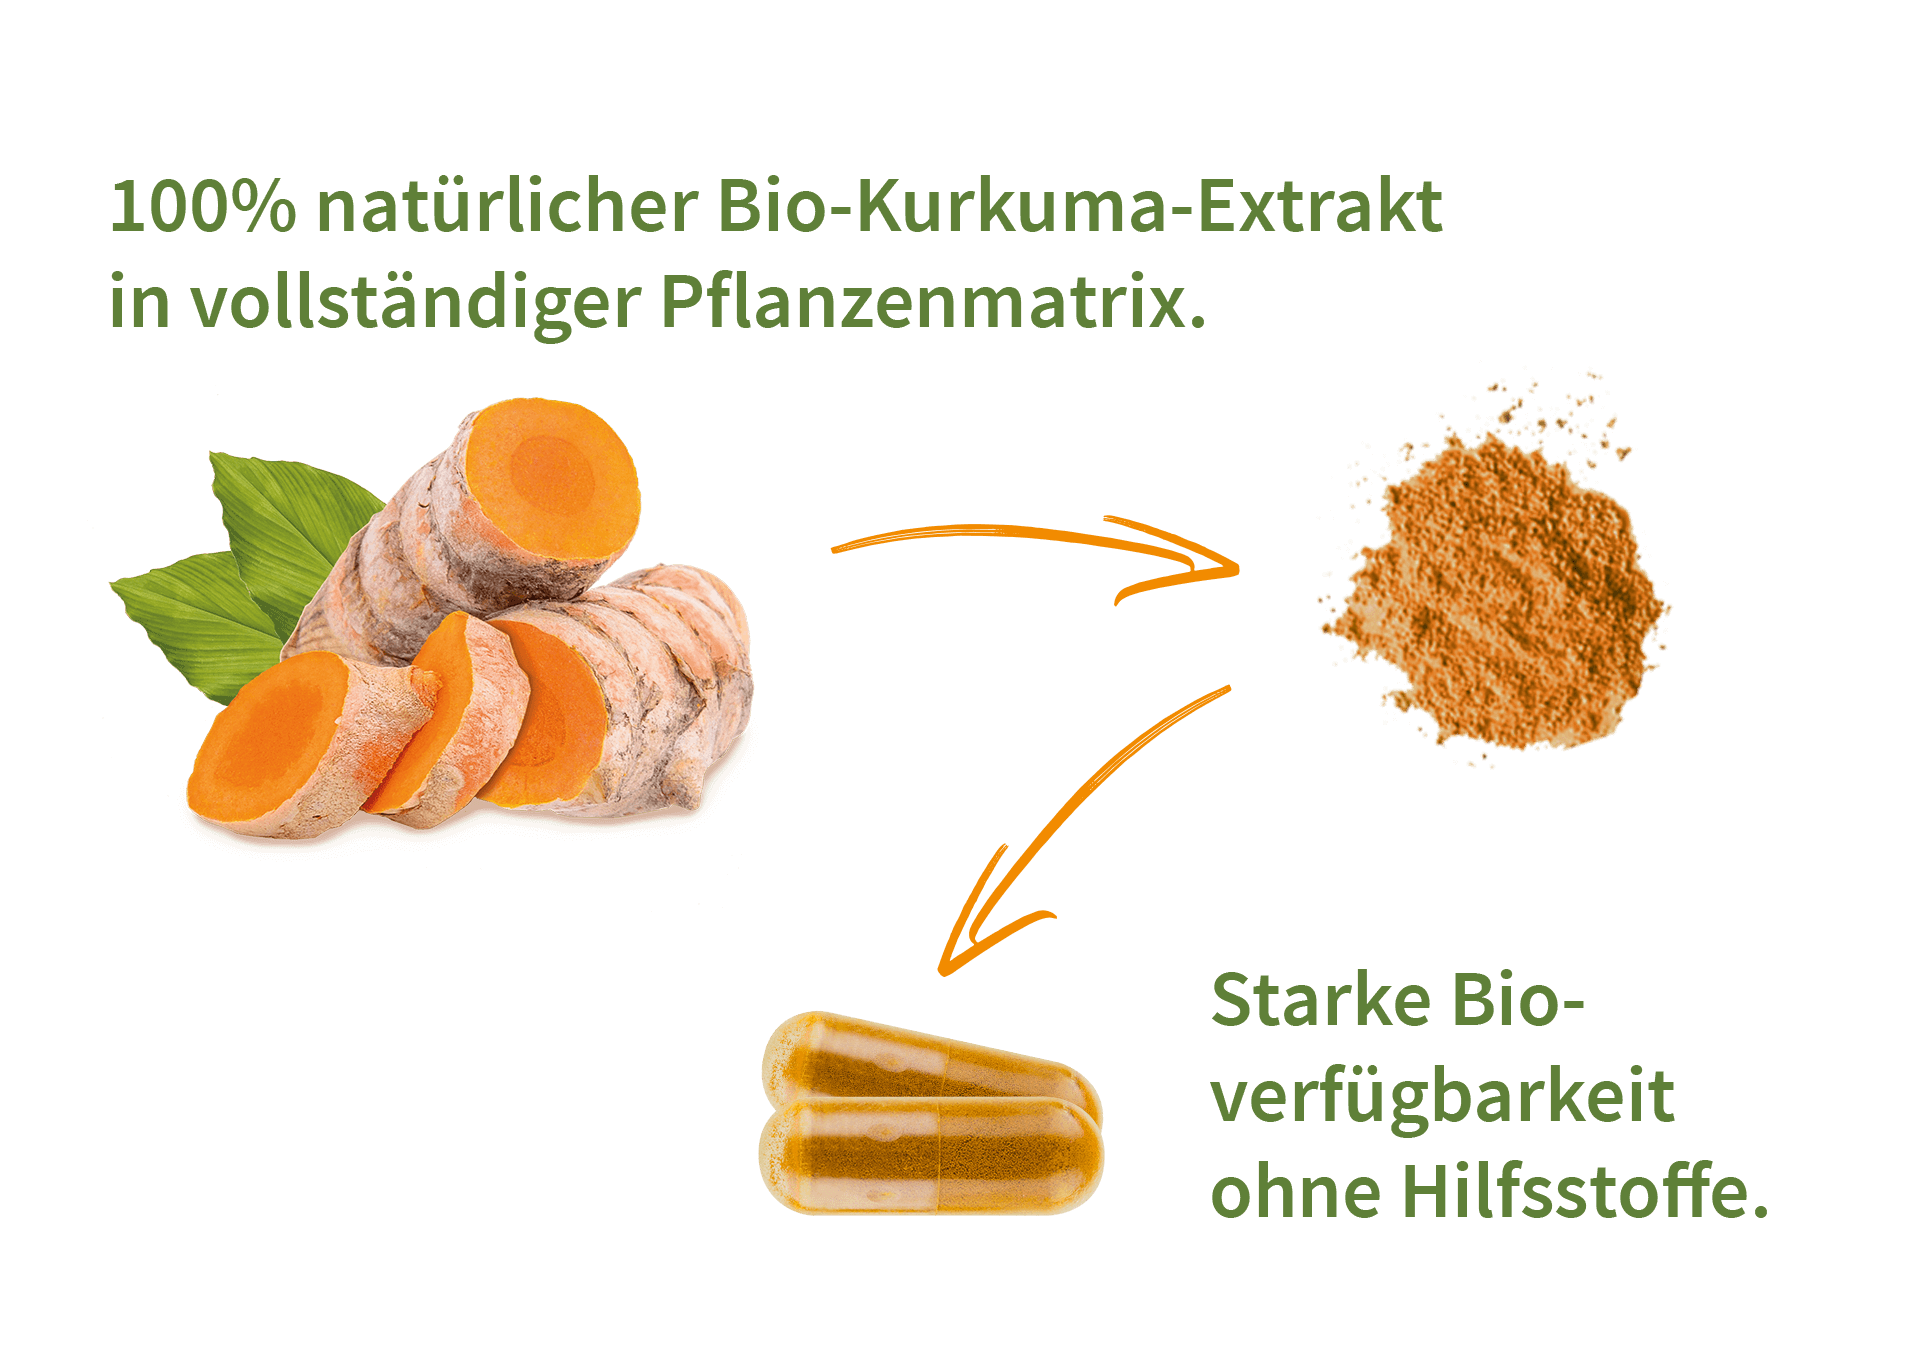 100% natürlicher Bio-Kurkuma-Extrakt in vollständiger Pflanzenmatrix